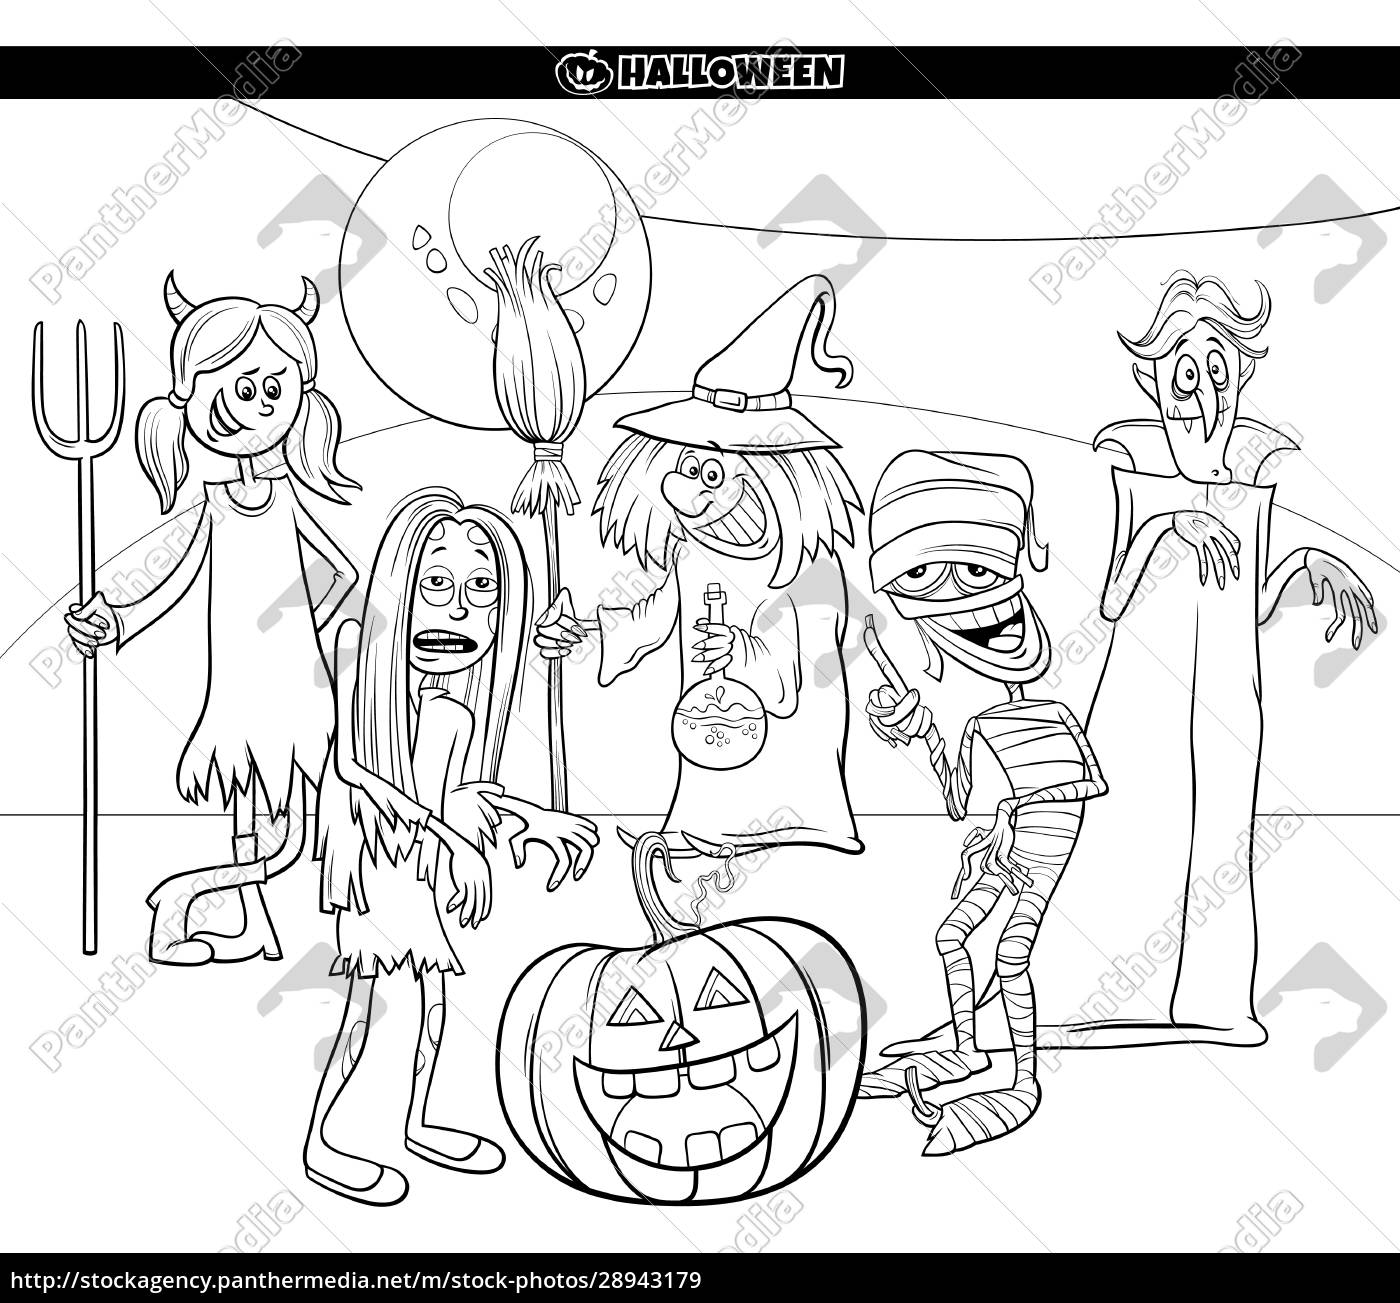 Como desenhar personagens do halloween?